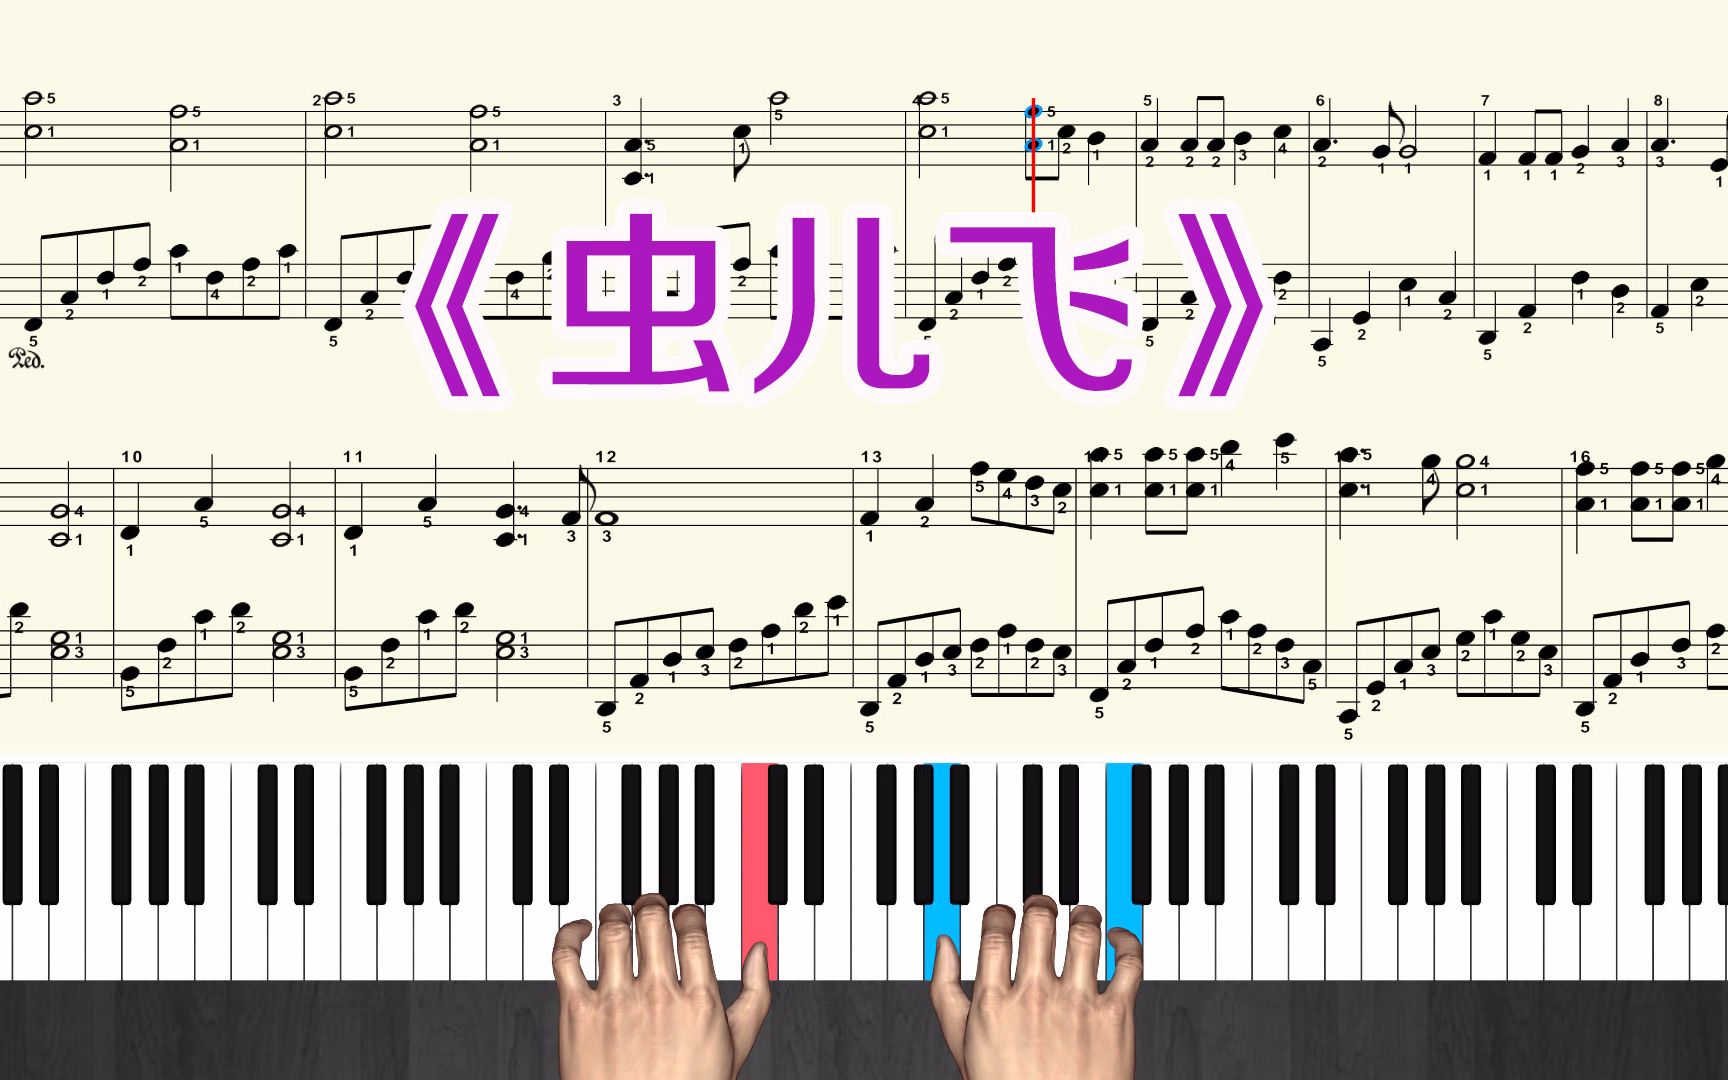 《虫儿飞》钢琴曲教学视频 钢琴谱带全部指法 演奏弹奏 慢速跟弹